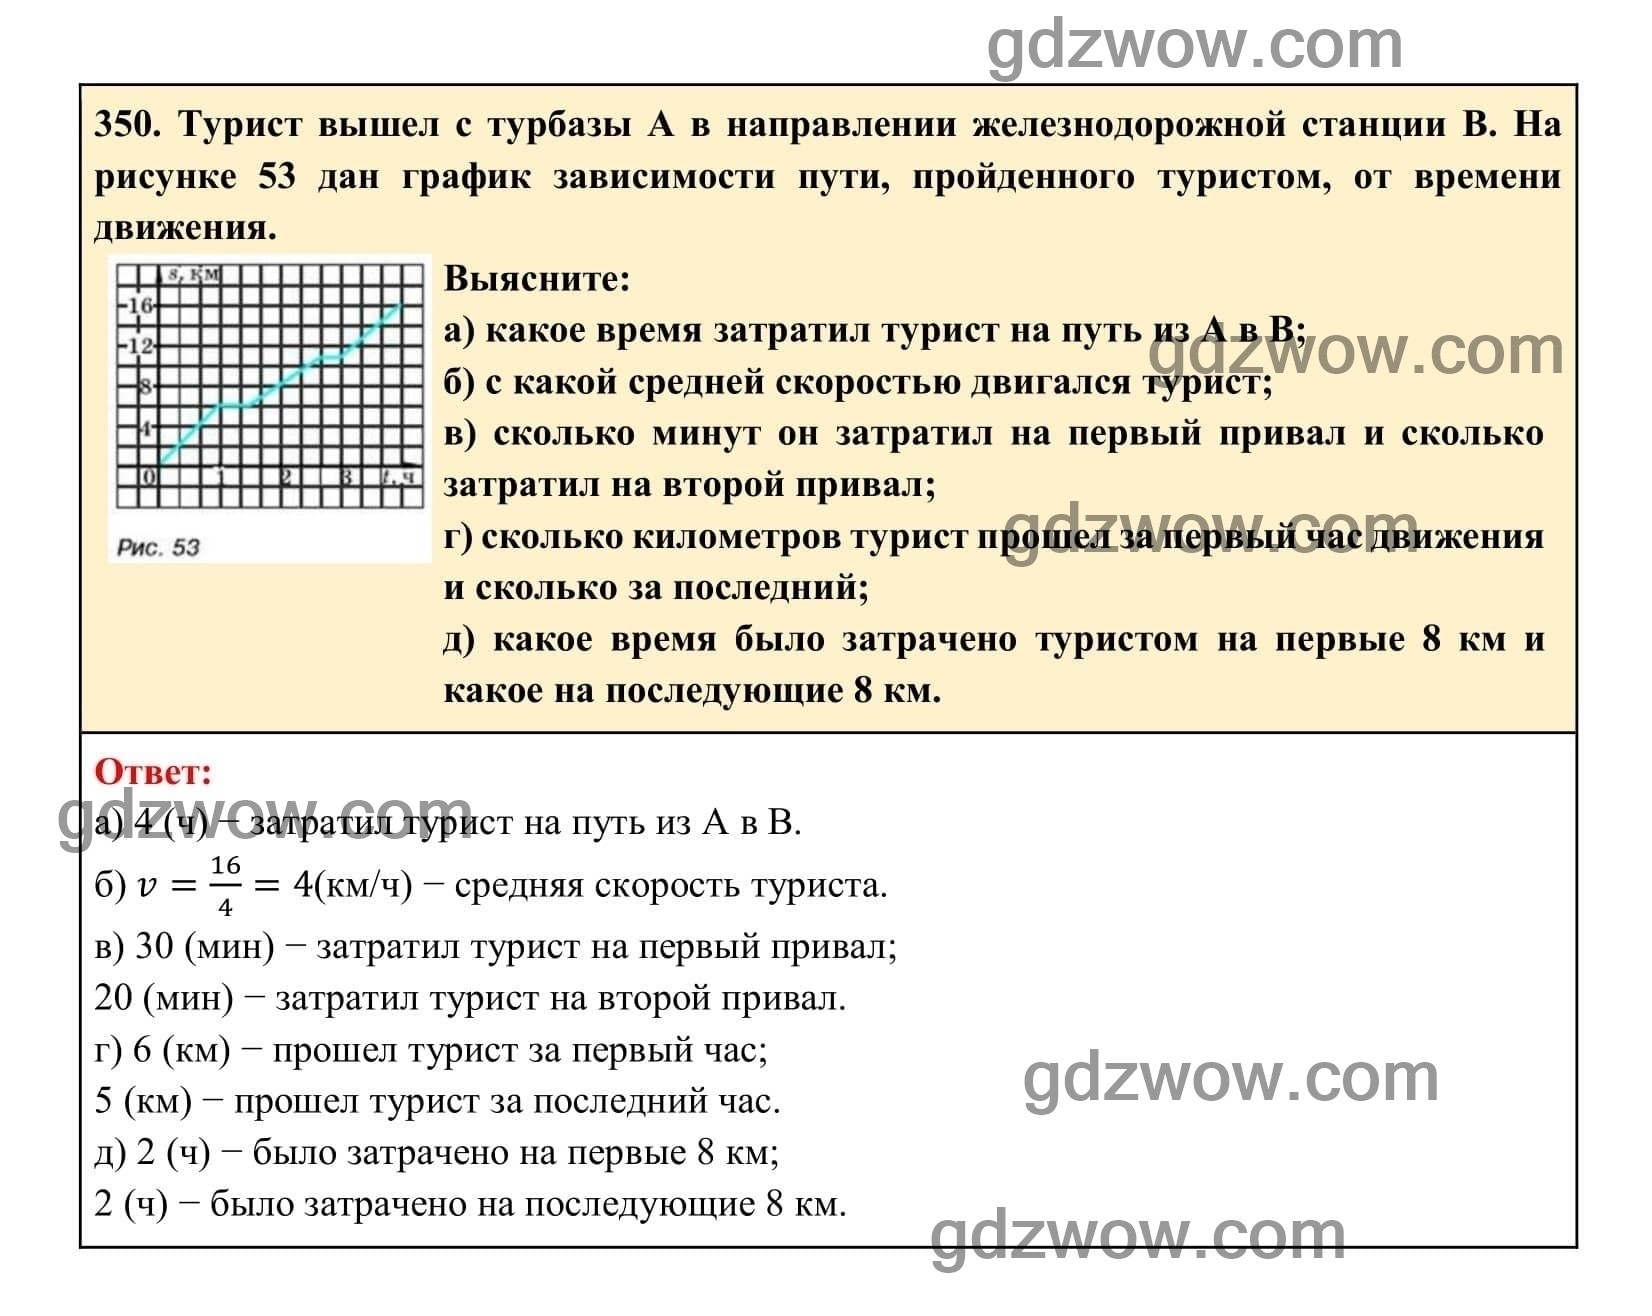 Упражнение 350 - ГДЗ по Алгебре 7 класс Учебник Макарычев (решебник) - GDZwow